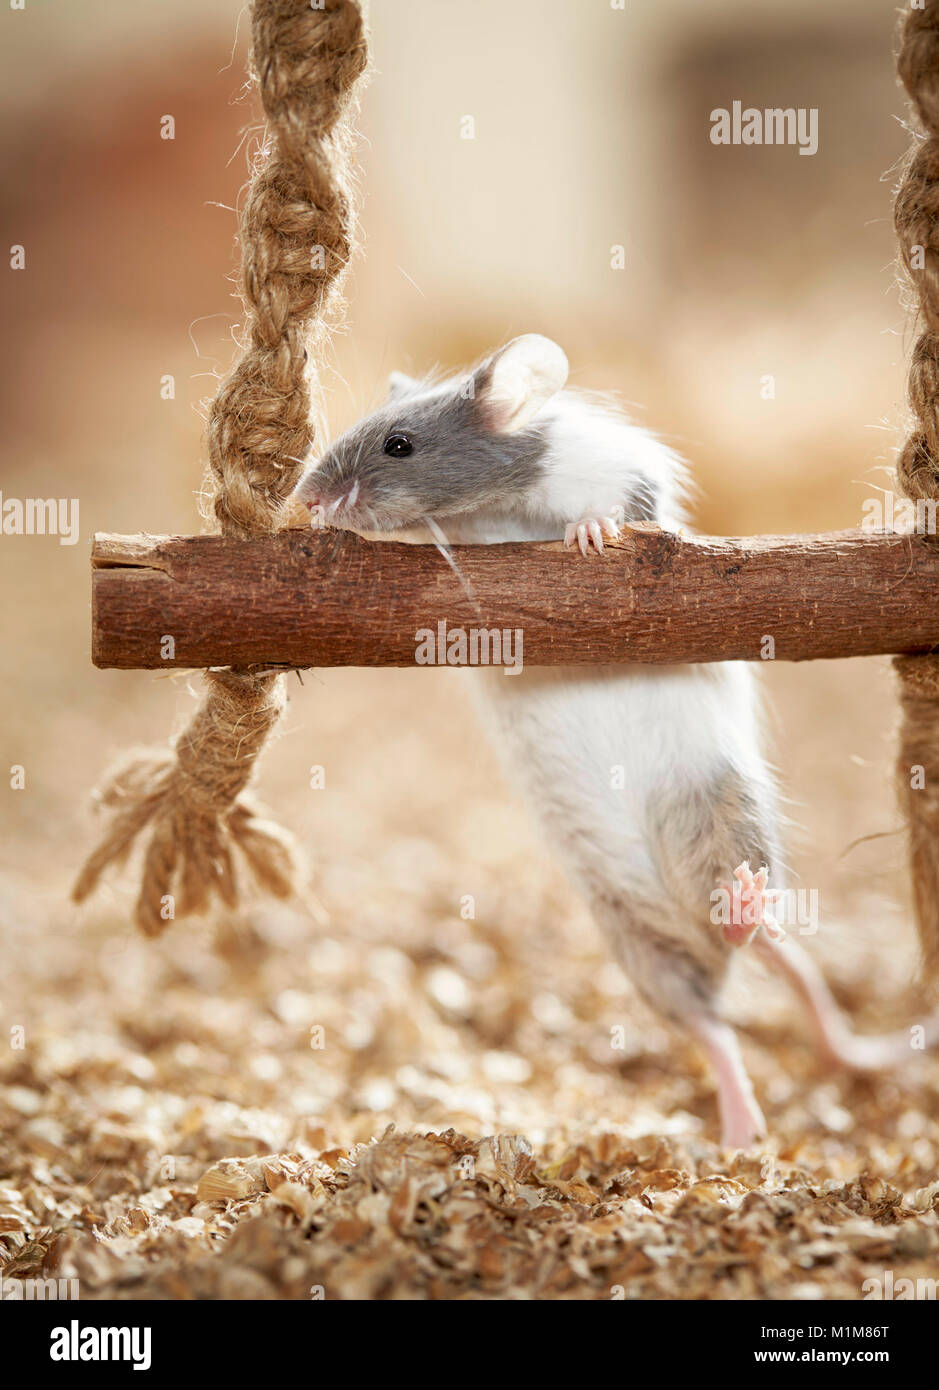 Escalade de la souris fantaisie sur une balançoire. Allemagne Banque D'Images